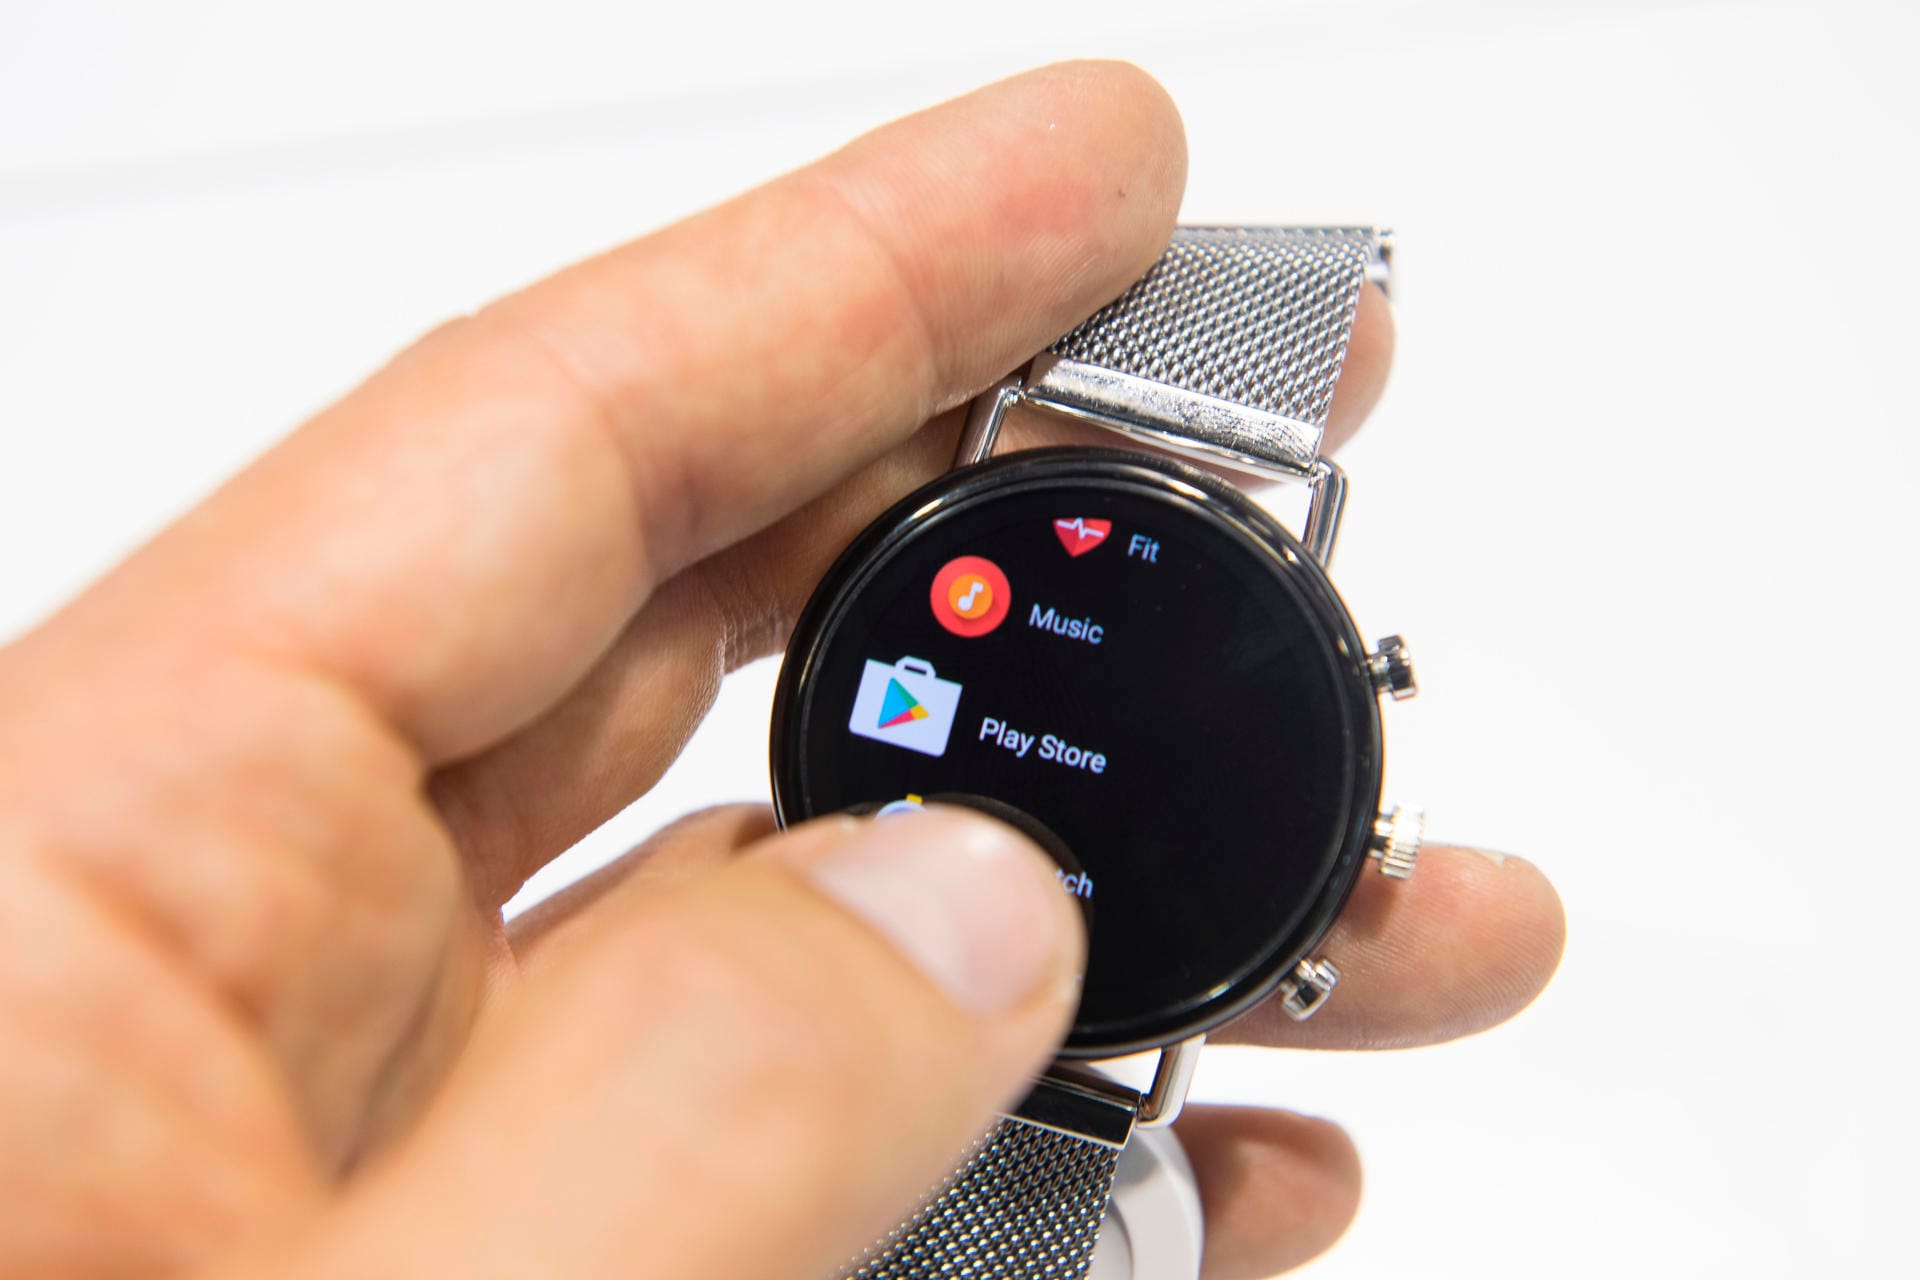 Minimalistisches Design: Die Smartwatch Skagen Falster 2 von Fossil kommt ohne den verbreiteten technischen Smart-Watch-Look aus.